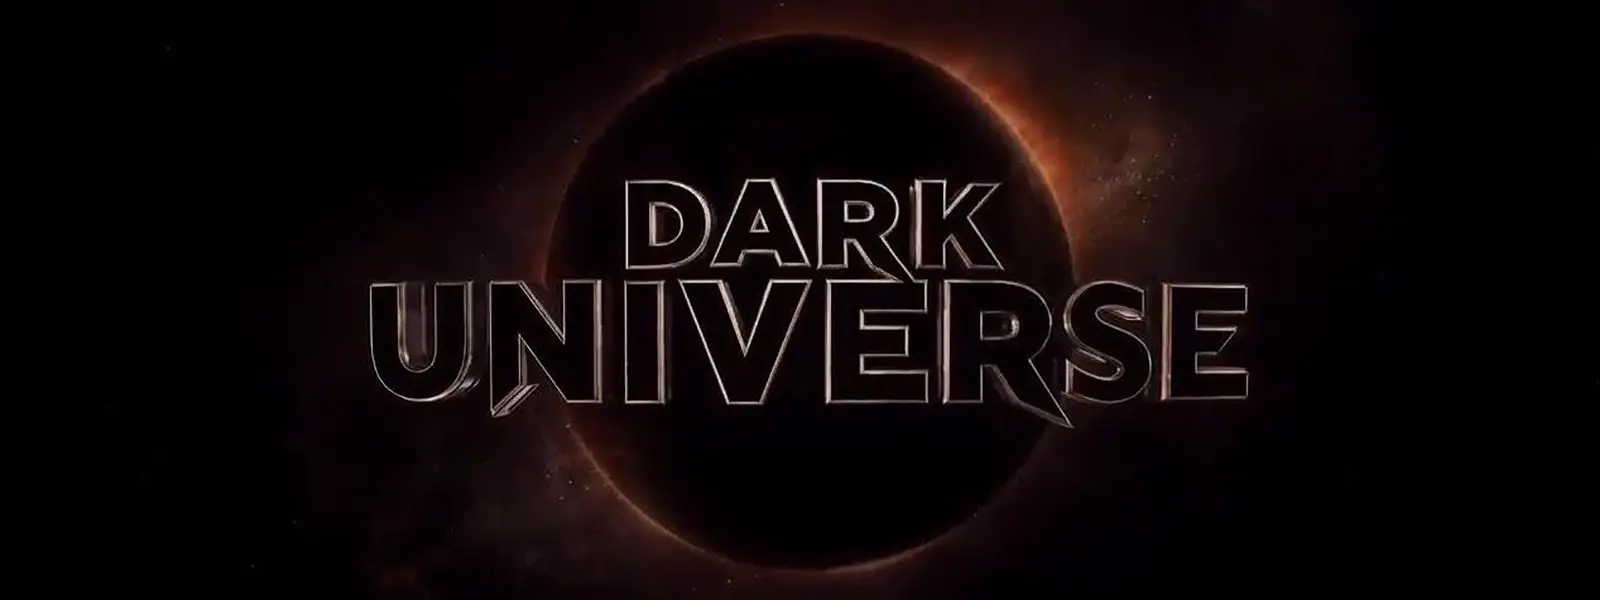 dark universe timeline banner art